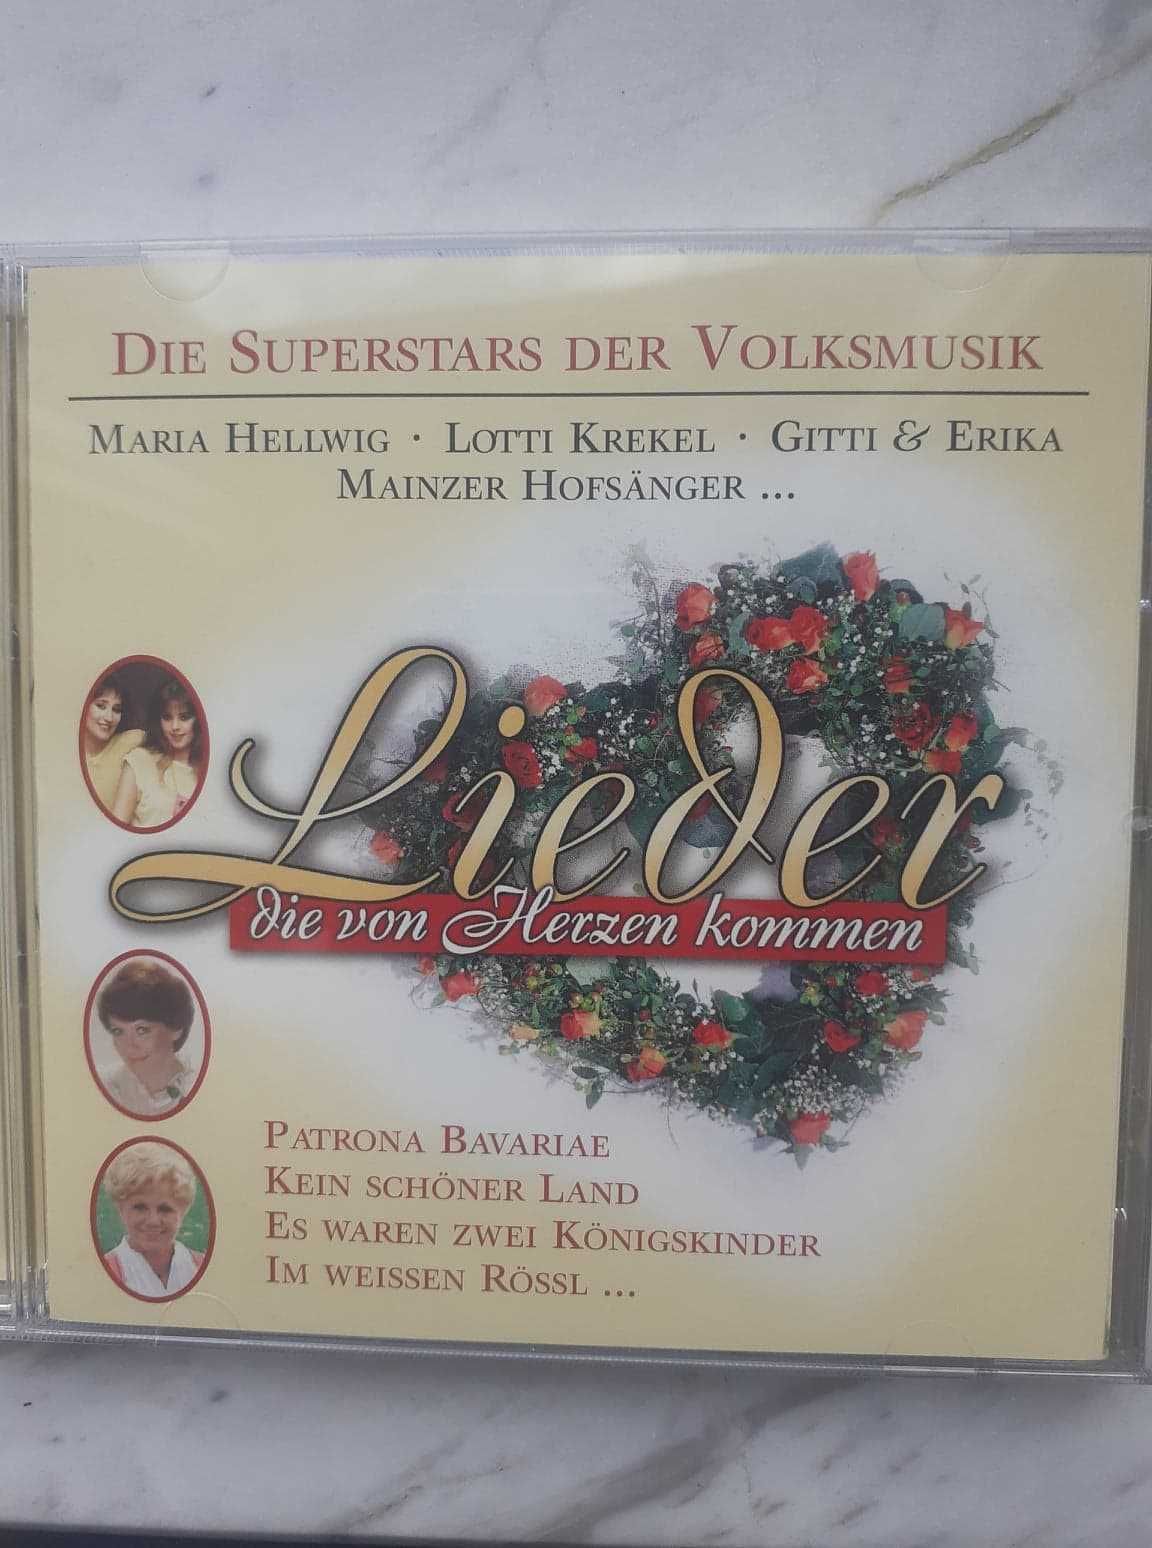 Die Superstars der Volksmusik "Lieder die von Herzen kommen" 2 CD box